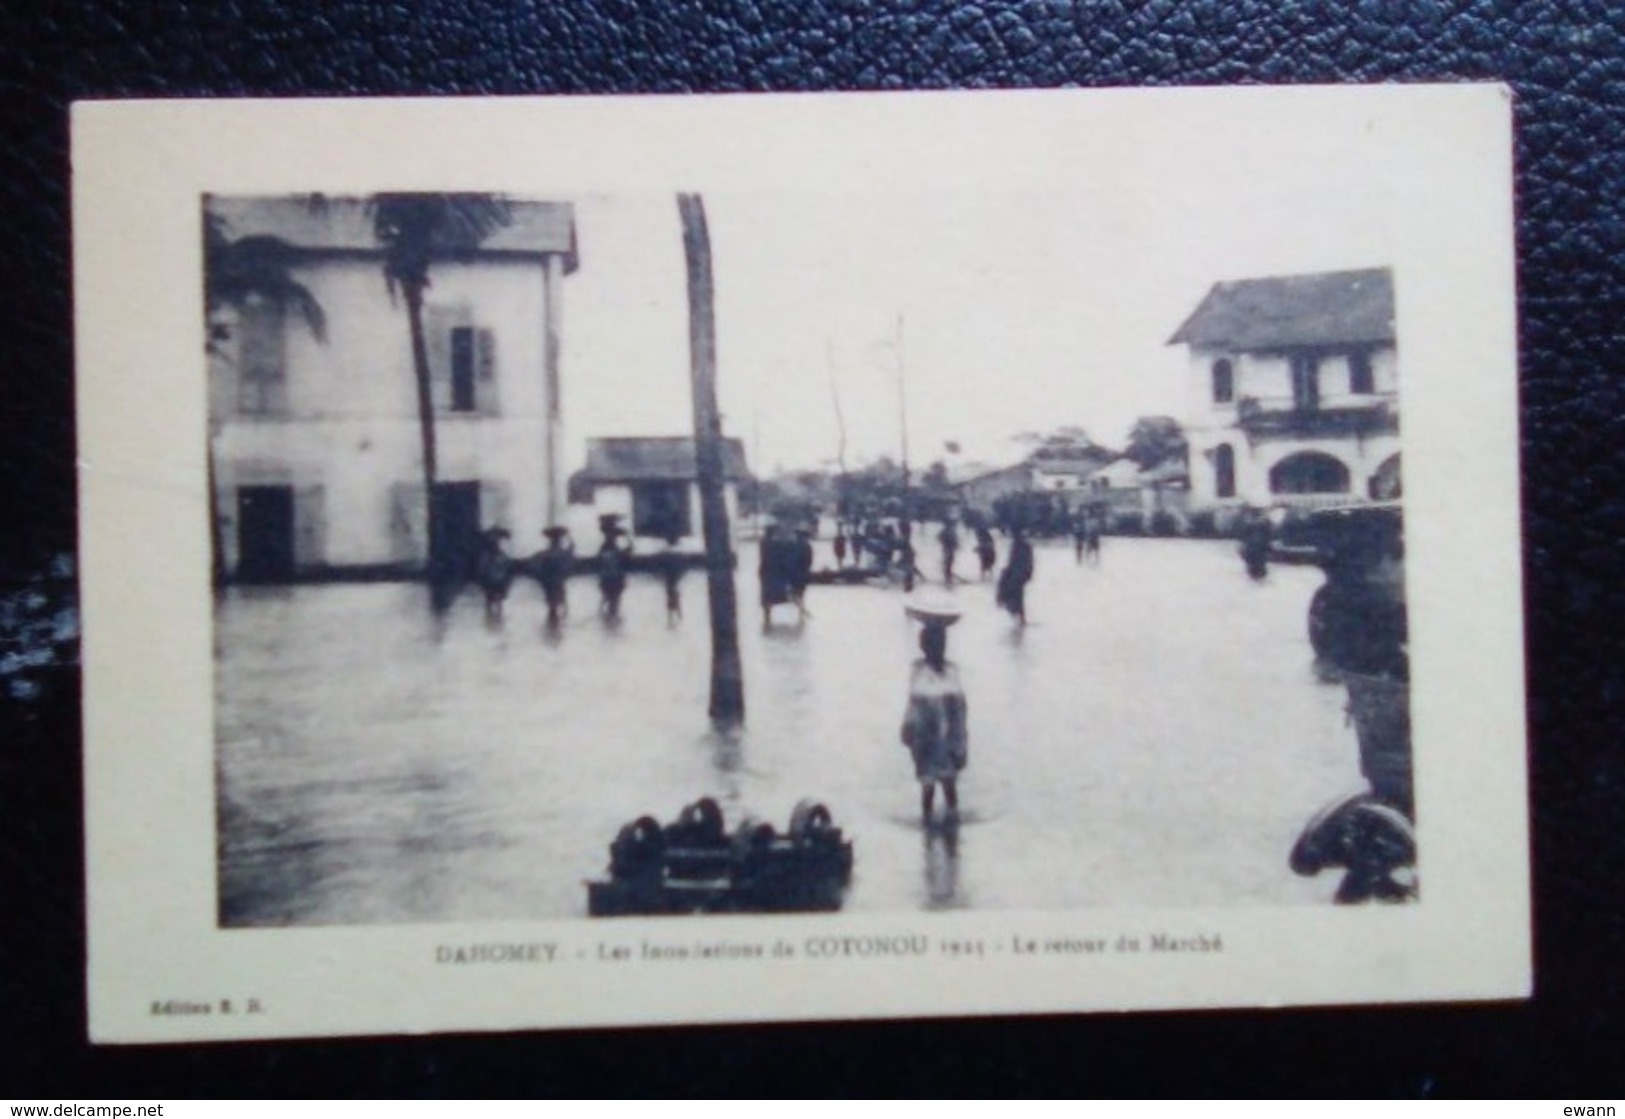 Dahomey - Carte Postale Ancienne - Les Inondations De Cotonou 1925 - Le Retour Du Marché - Dahomey